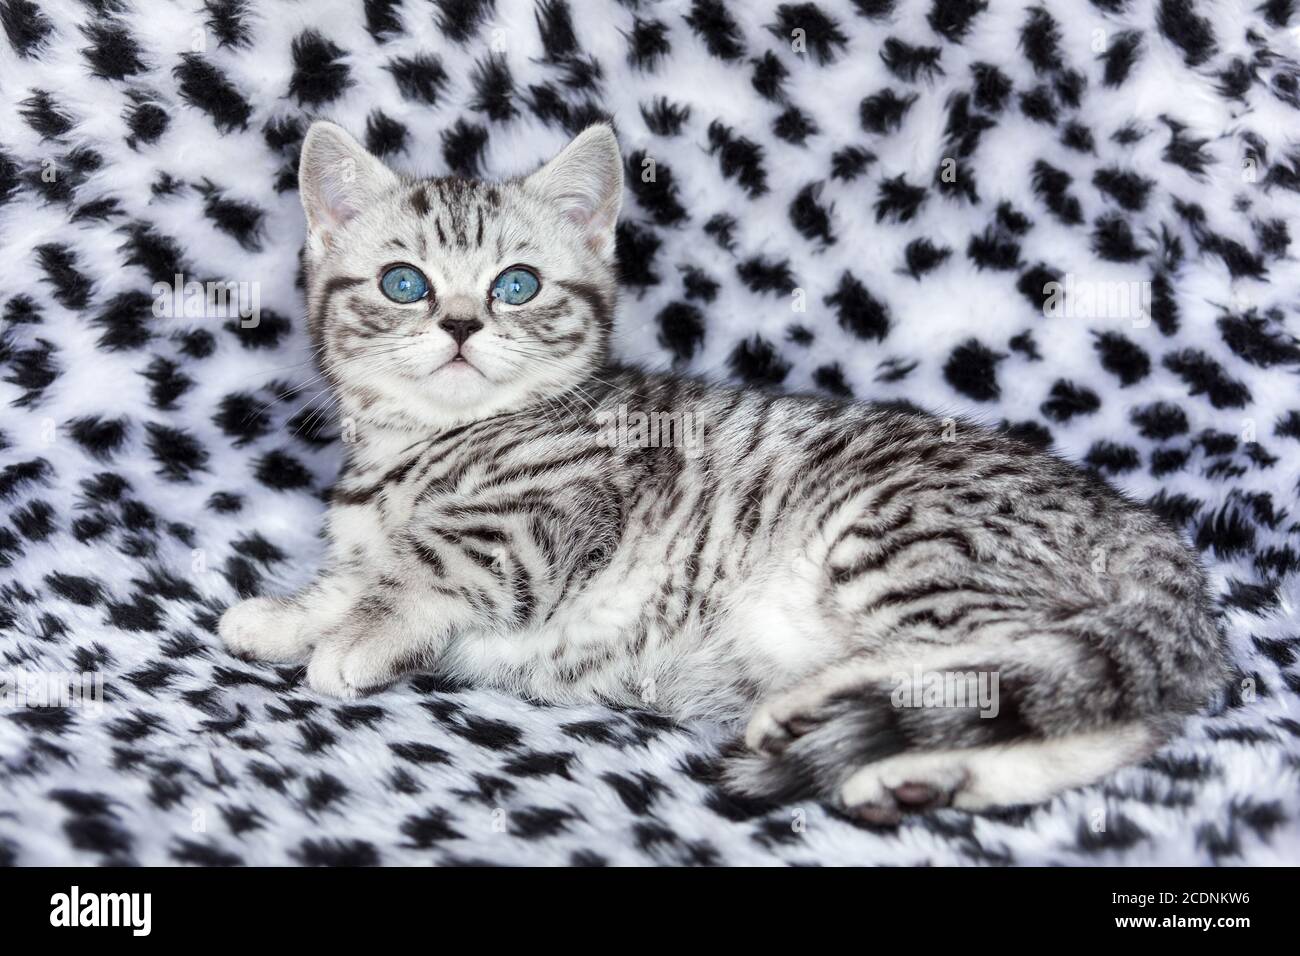 Giovane tabby nero argentato macchiato britannico shorthair gatto sdraiato su pelliccia bianca e nera Foto Stock